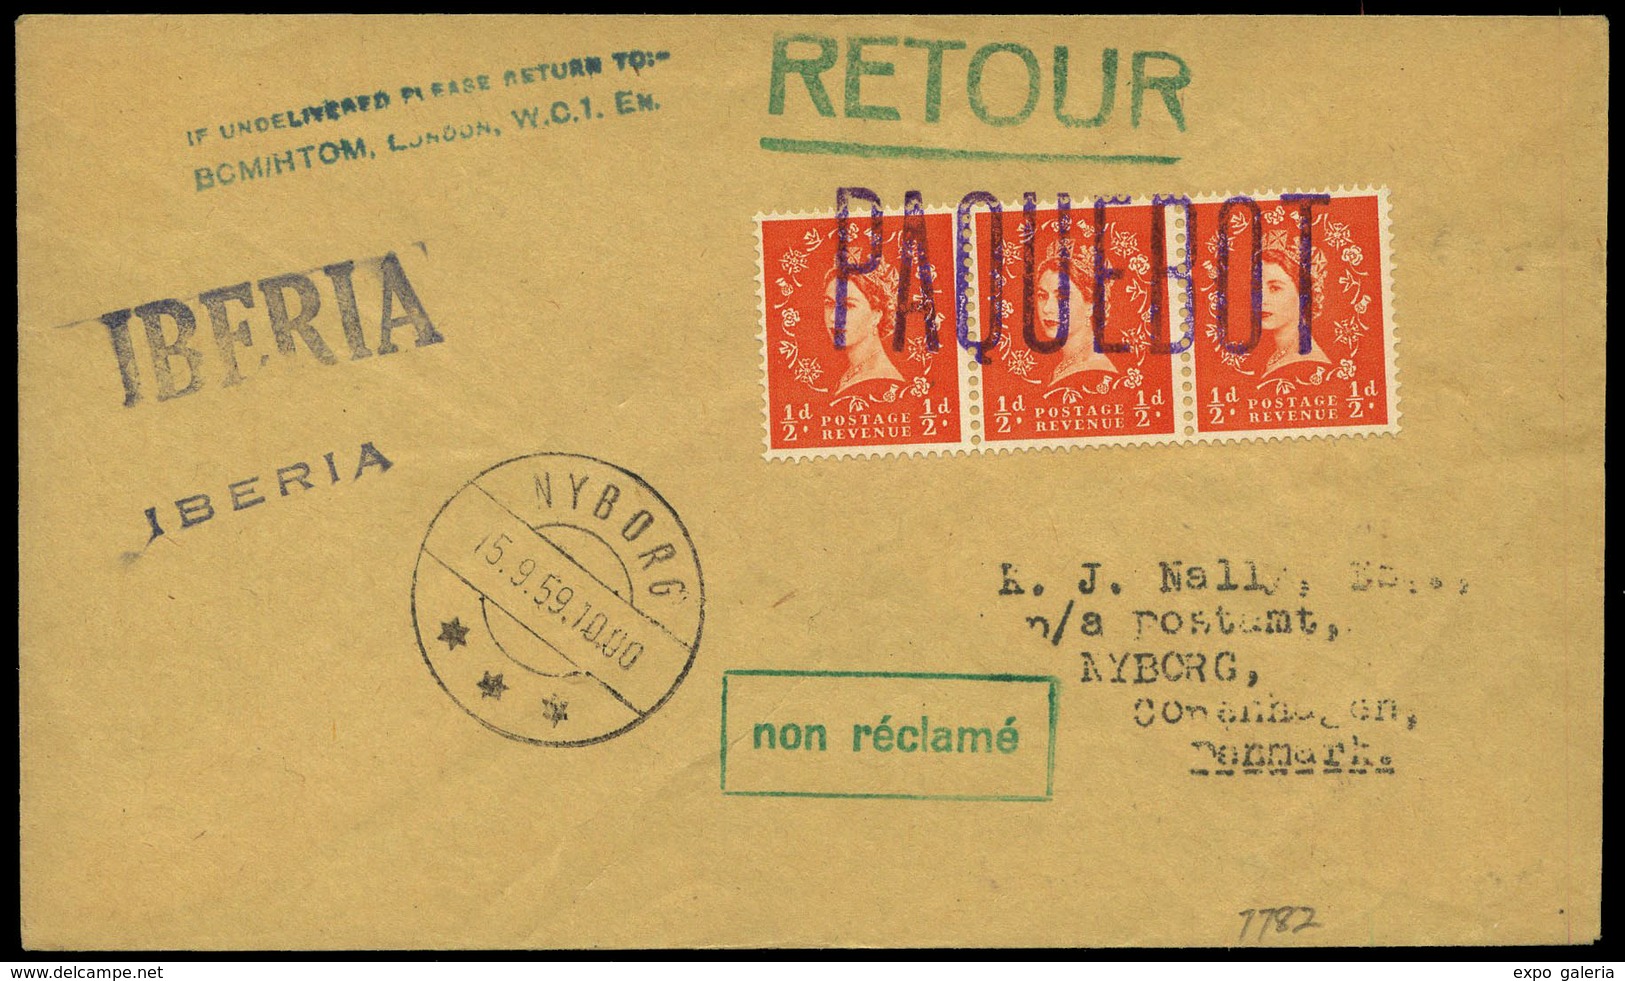 Sello Inglés 1959.Londres. Carta Cda Con 3 Sellos Ingleses Y Marca “Paquebot” - Unused Stamps